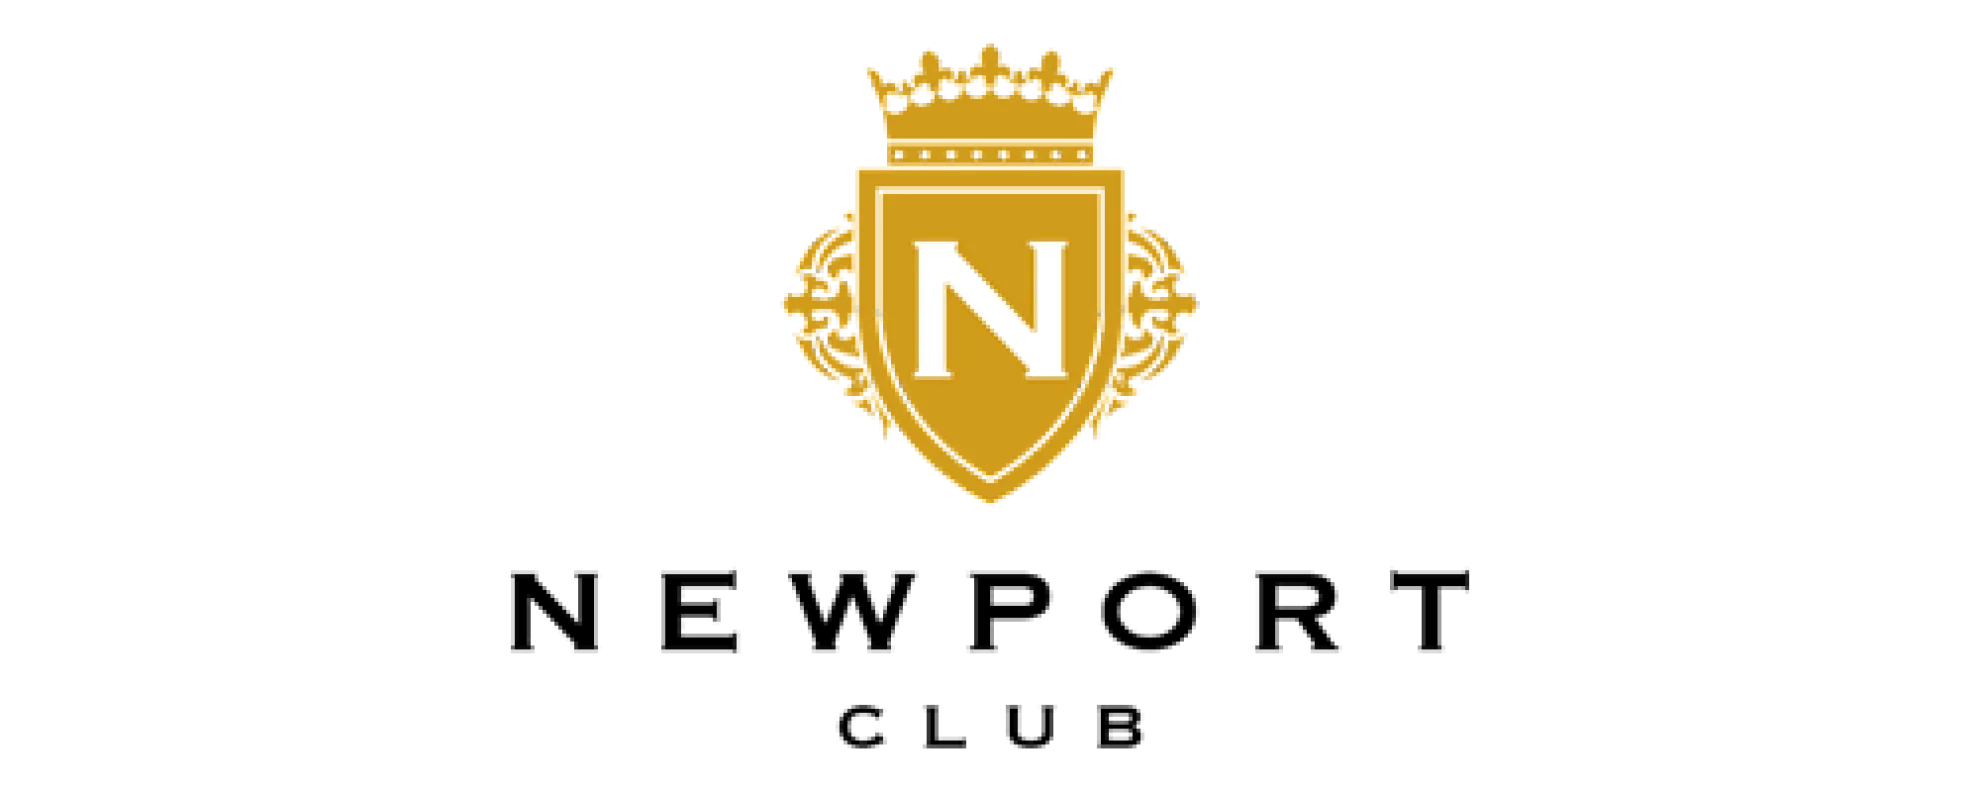 NWR 뉴포트 클럽 로고